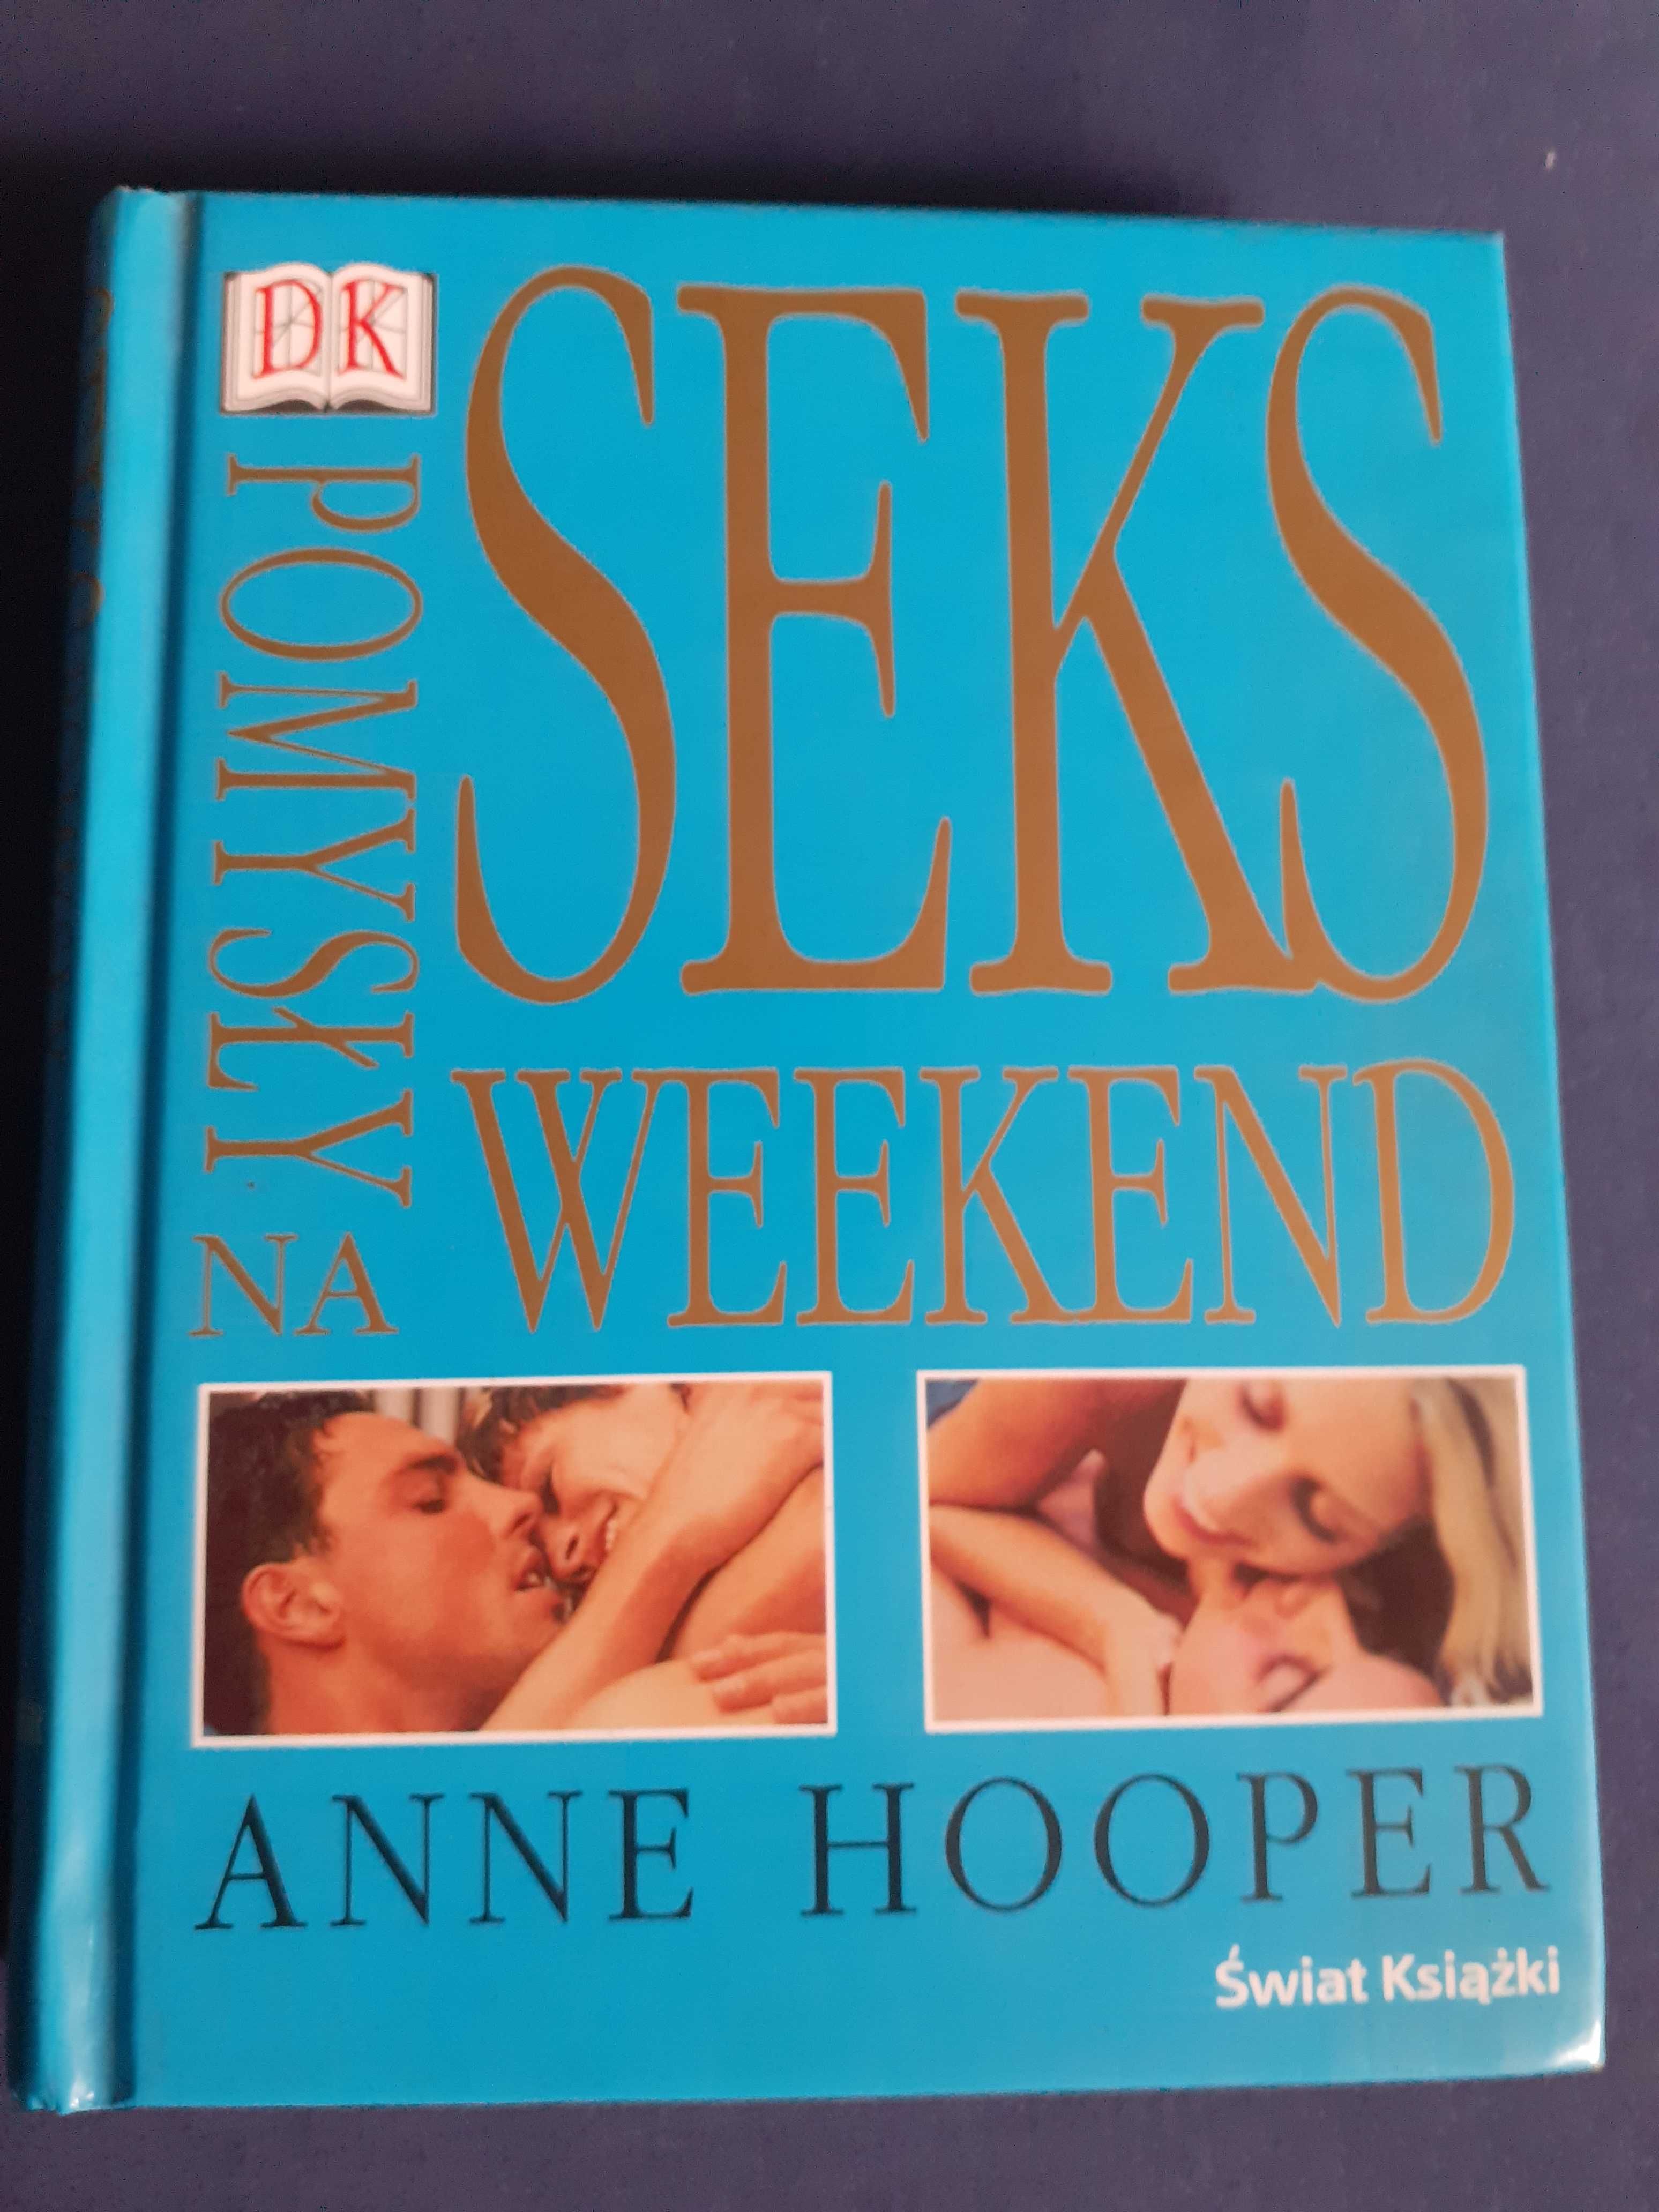 Seks, pomysły na weekend + czy wiesz wszystko - A.Hooper